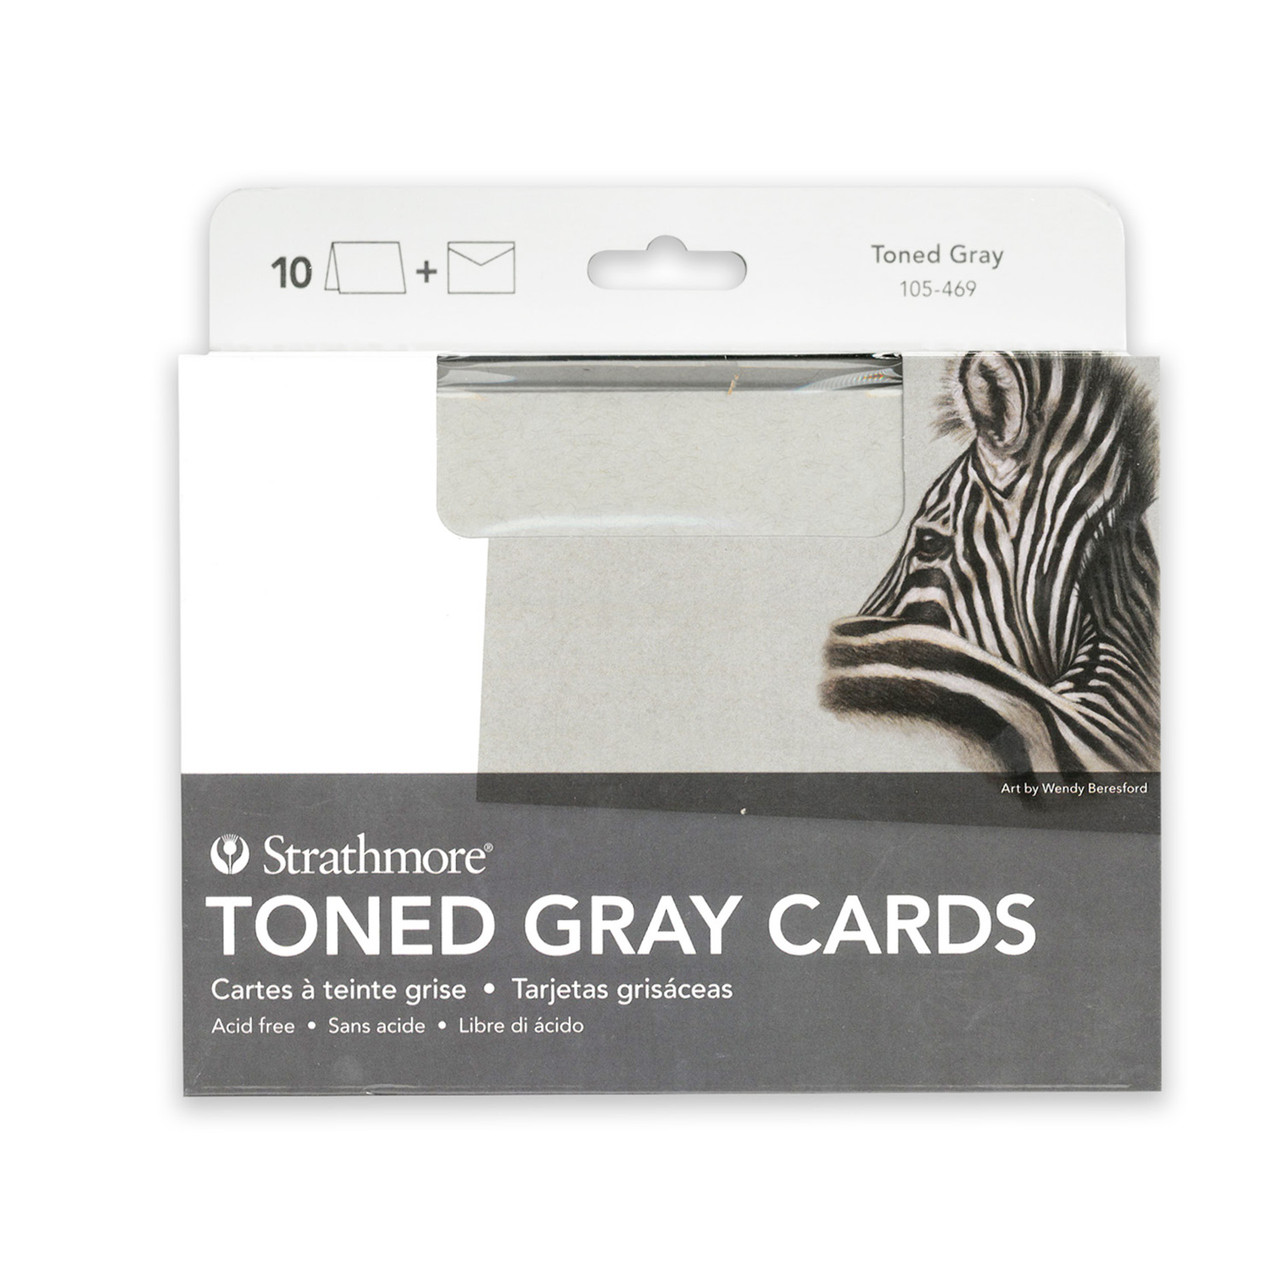 Strathmore Toned Gray Cards - John Neal Books